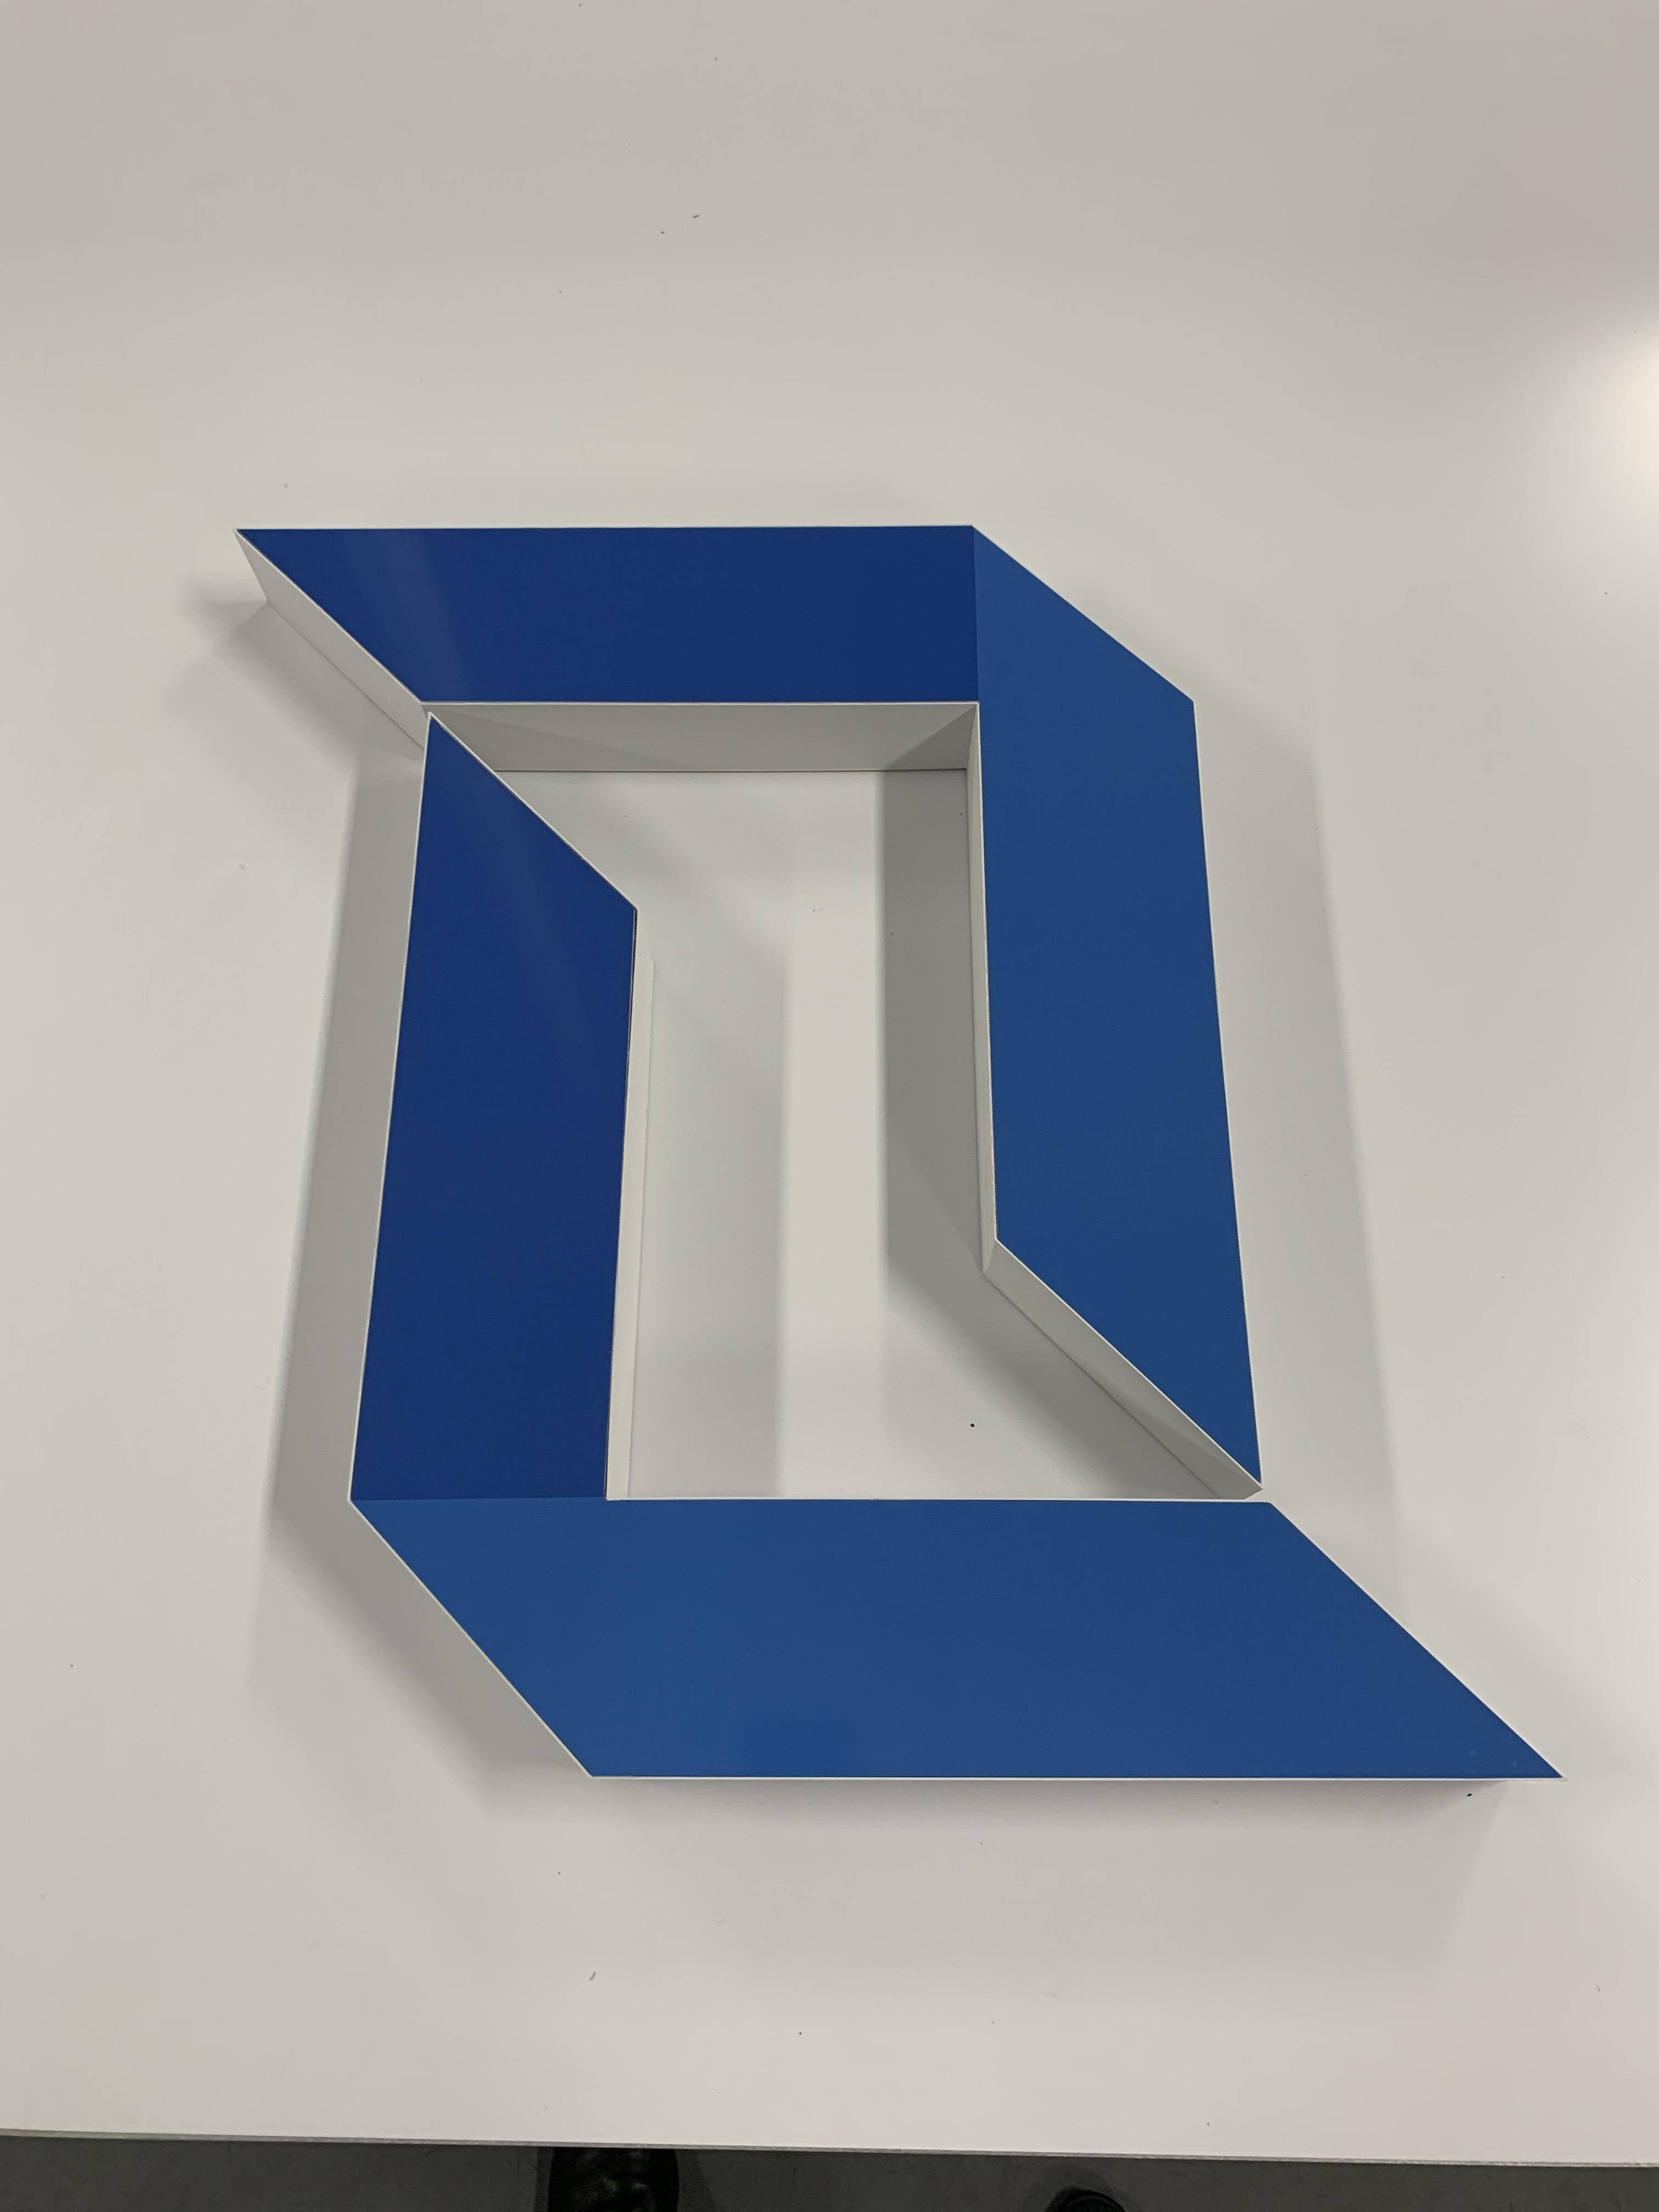 3D Printed Logo